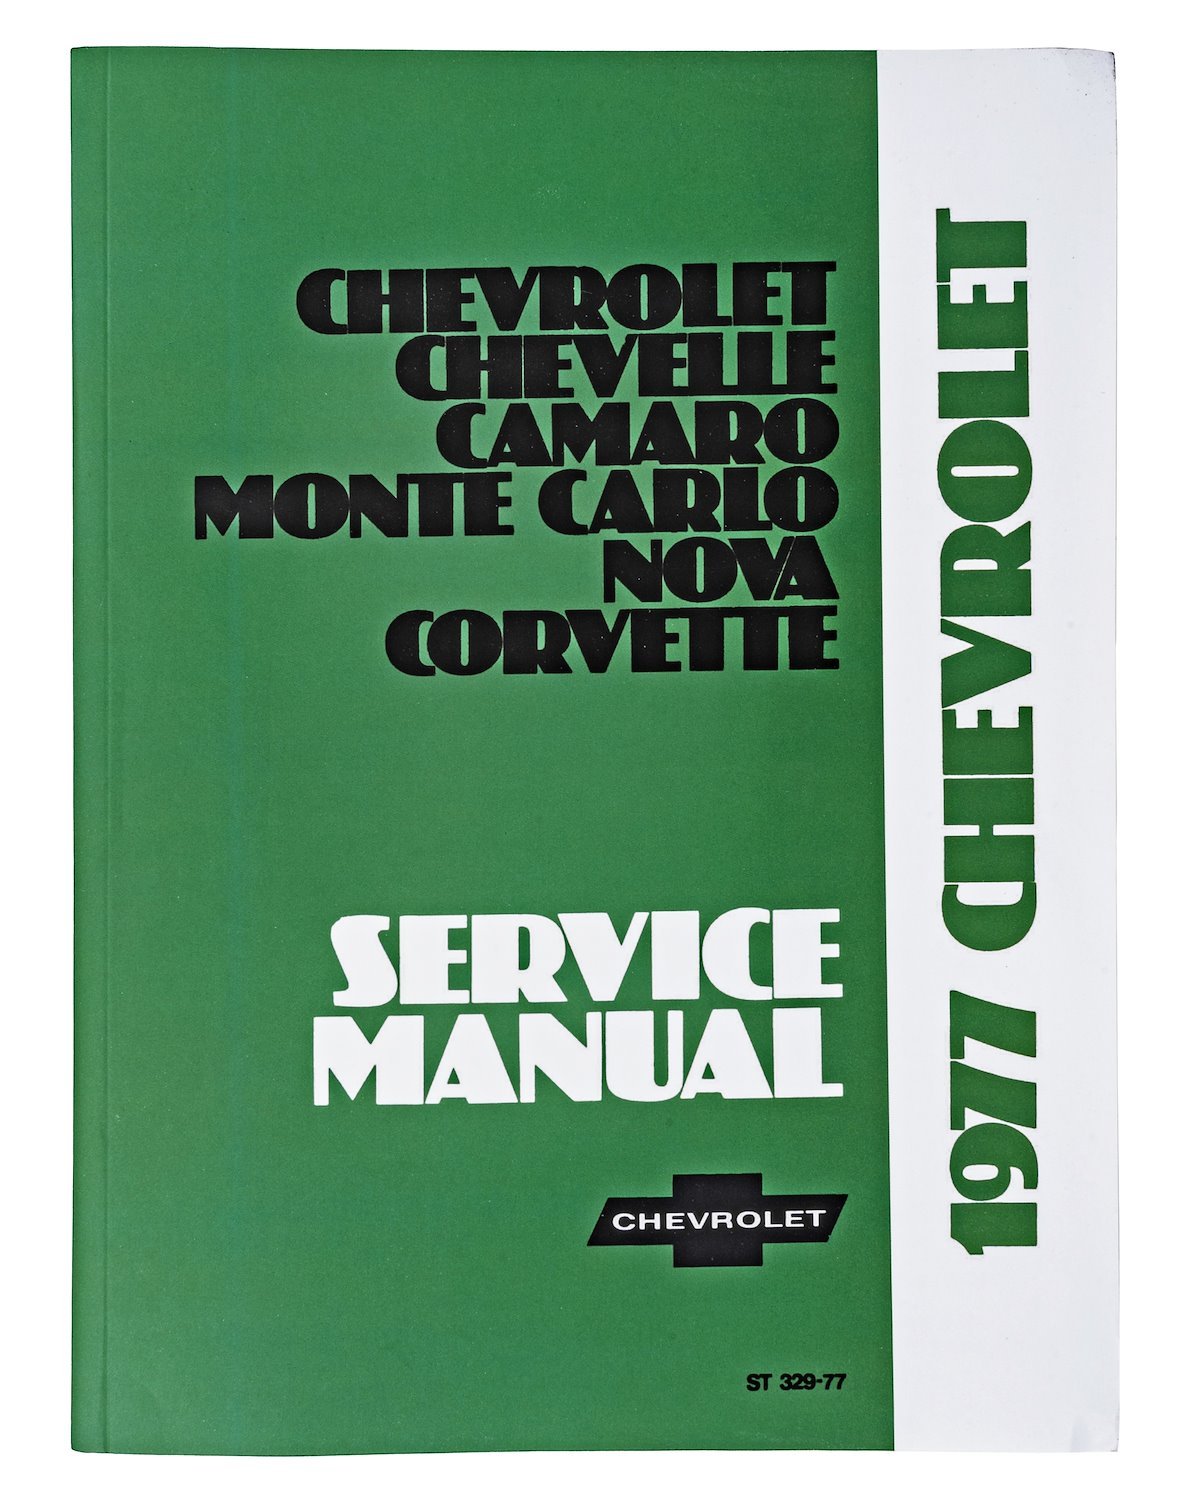 Chassis Service Manual for 1977 Chevrolet Camaro, Chevelle, Corvette, Monte Carlo, Nova